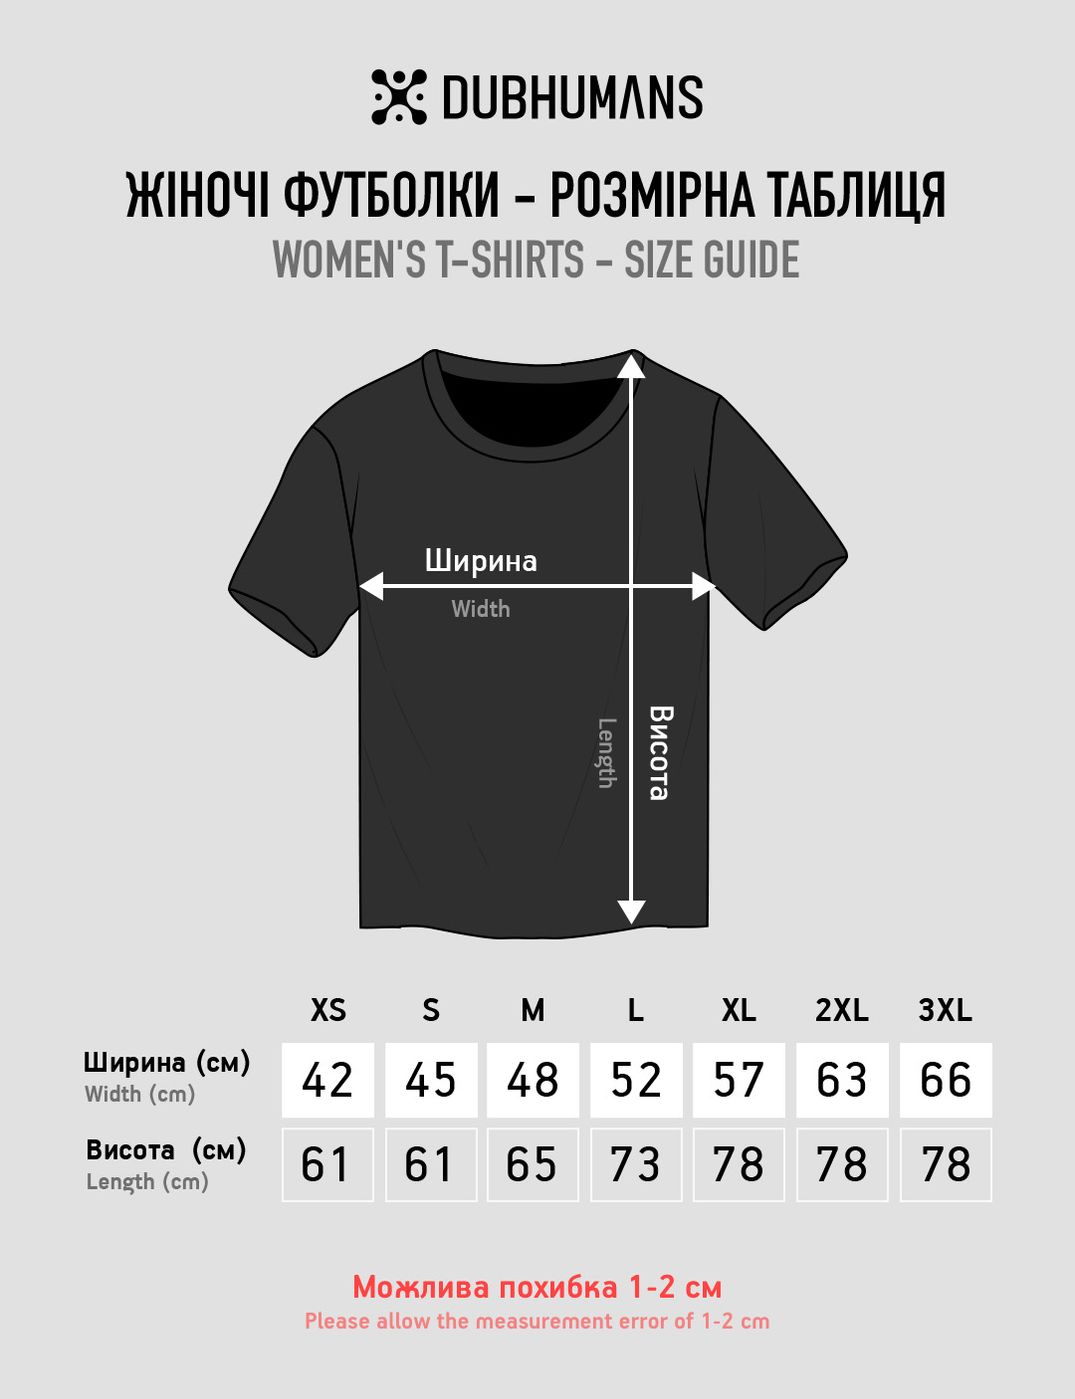 Women's T-shirt “Leopard Armed Forces of Ukraine”, Black, M